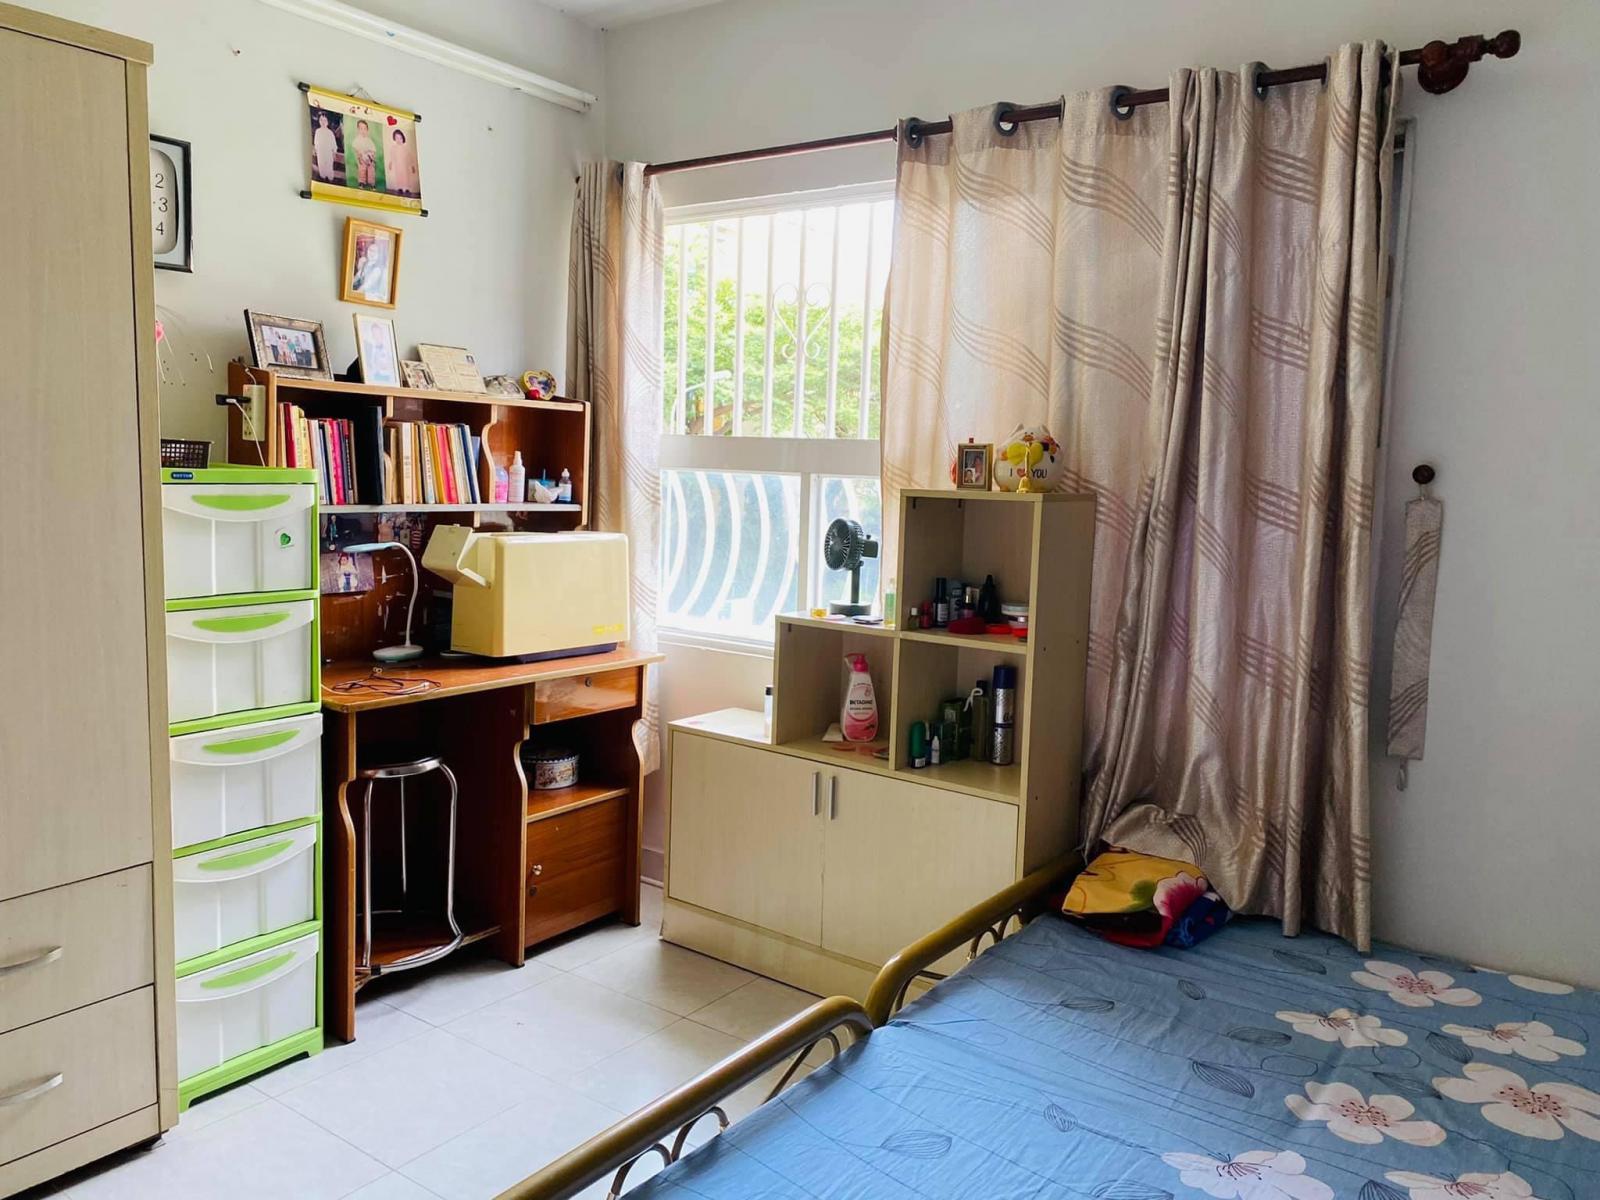 Bán căn hộ Bàu Cát 2 quận Tân Bình. SỔ HỒNG chính chủ, 64m2, 2PN tặng nội thất. Hỗ trợ vay ngân hàng 12571579